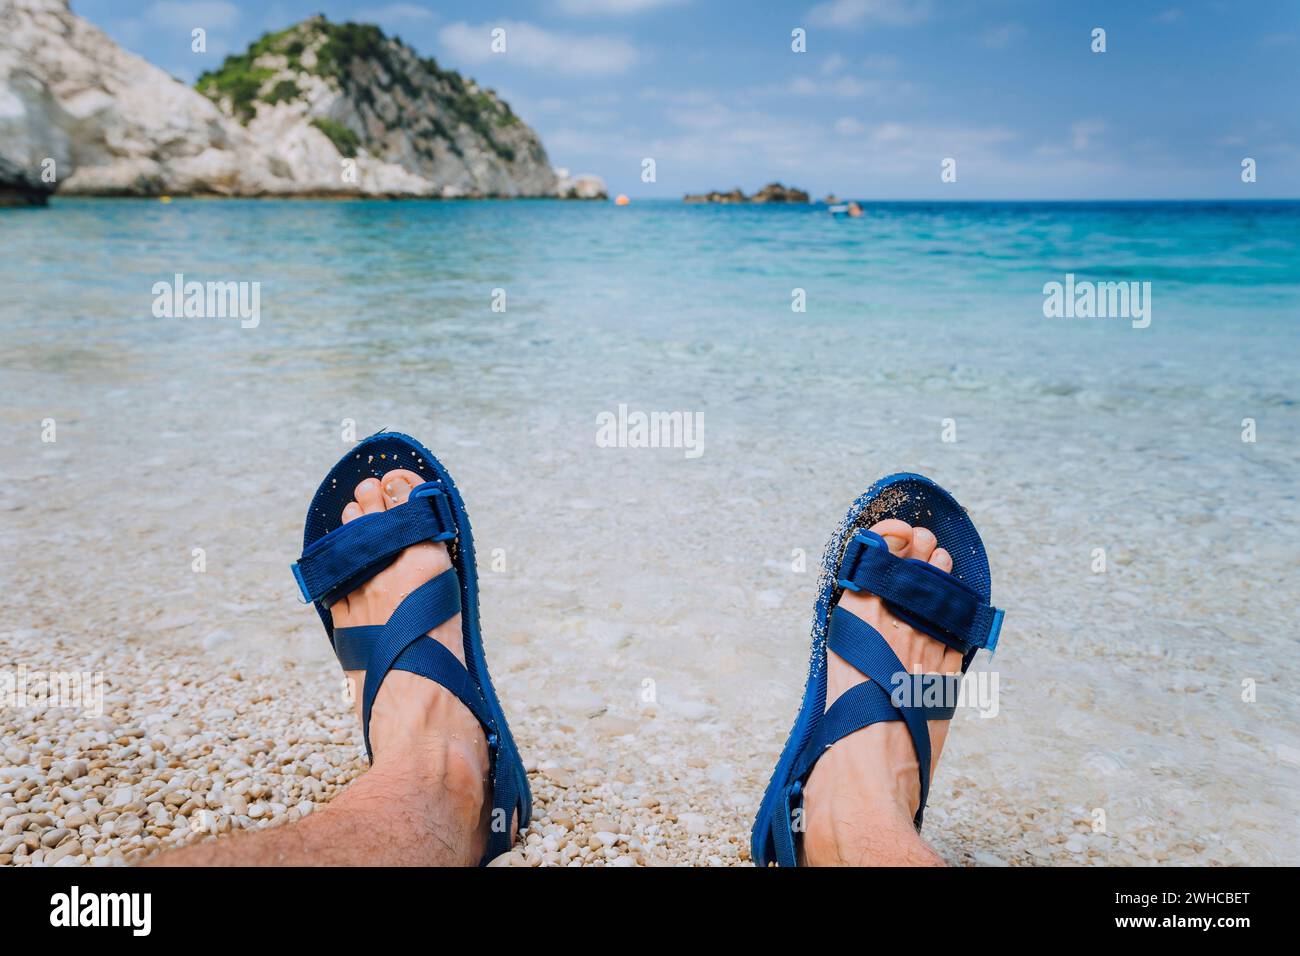 Les jeunes pieds masculins portent une sandale de flip-flop bleue bronzer sur la plage de galets devant l'eau de mer bleue et les rochers en arrière-plan à l'horizon. Banque D'Images